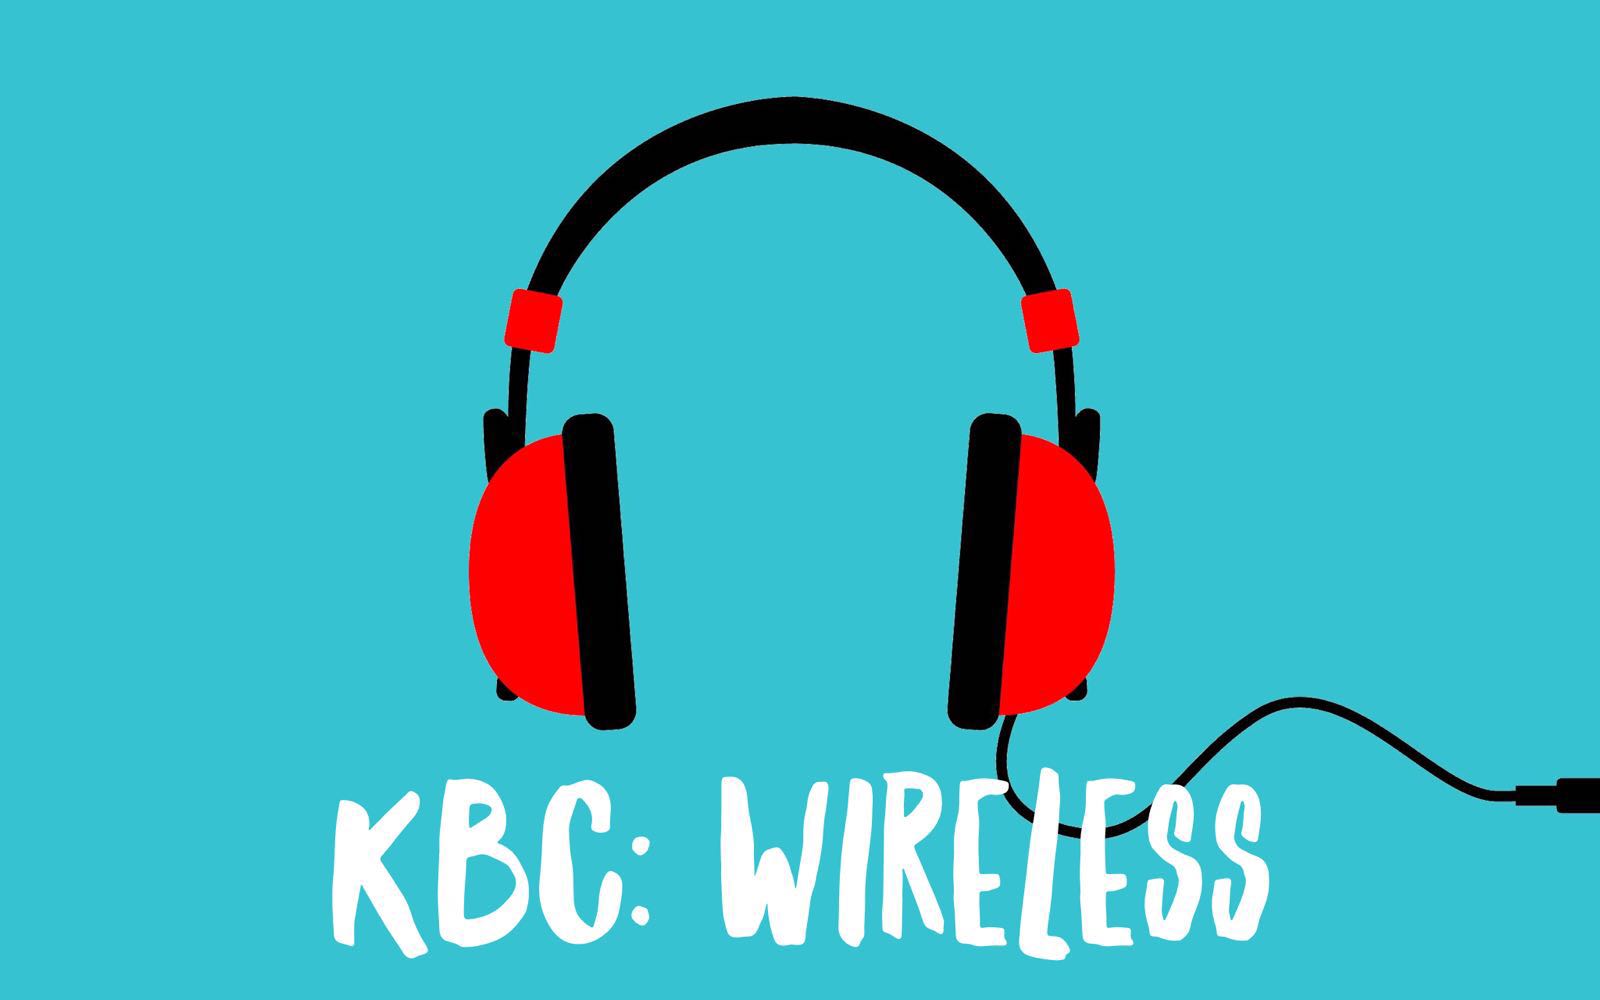 KBC: Wireless Fitness Classes in Sunderland